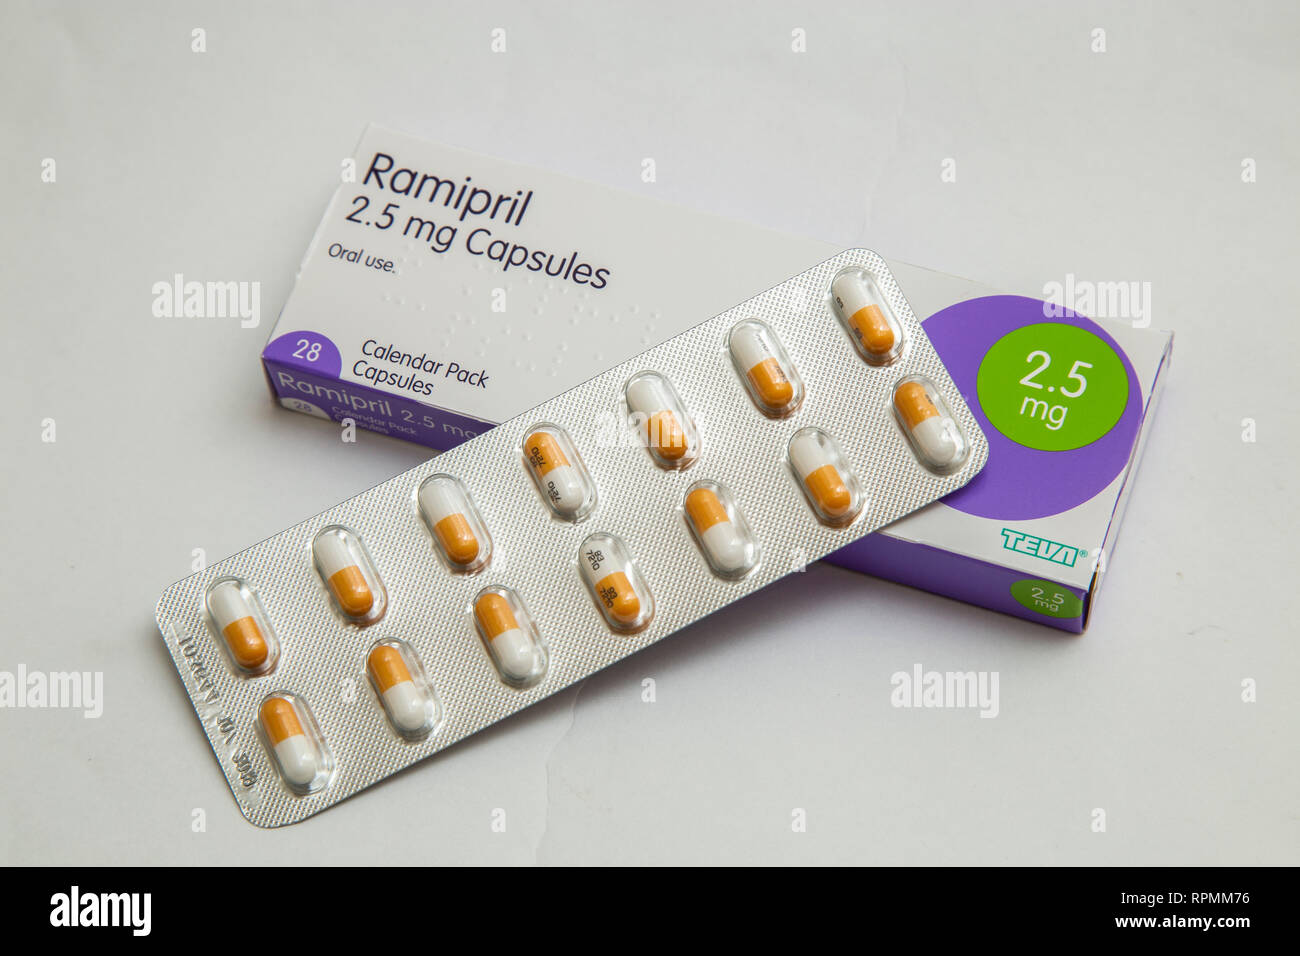 Ramipril, ein Angiotensin Converting Enzyme inhibitor Droge, die behandelt hohen Blutdruck in der Regel nach einem Herzinfarkt nicht berücksichtigt. Stockfoto